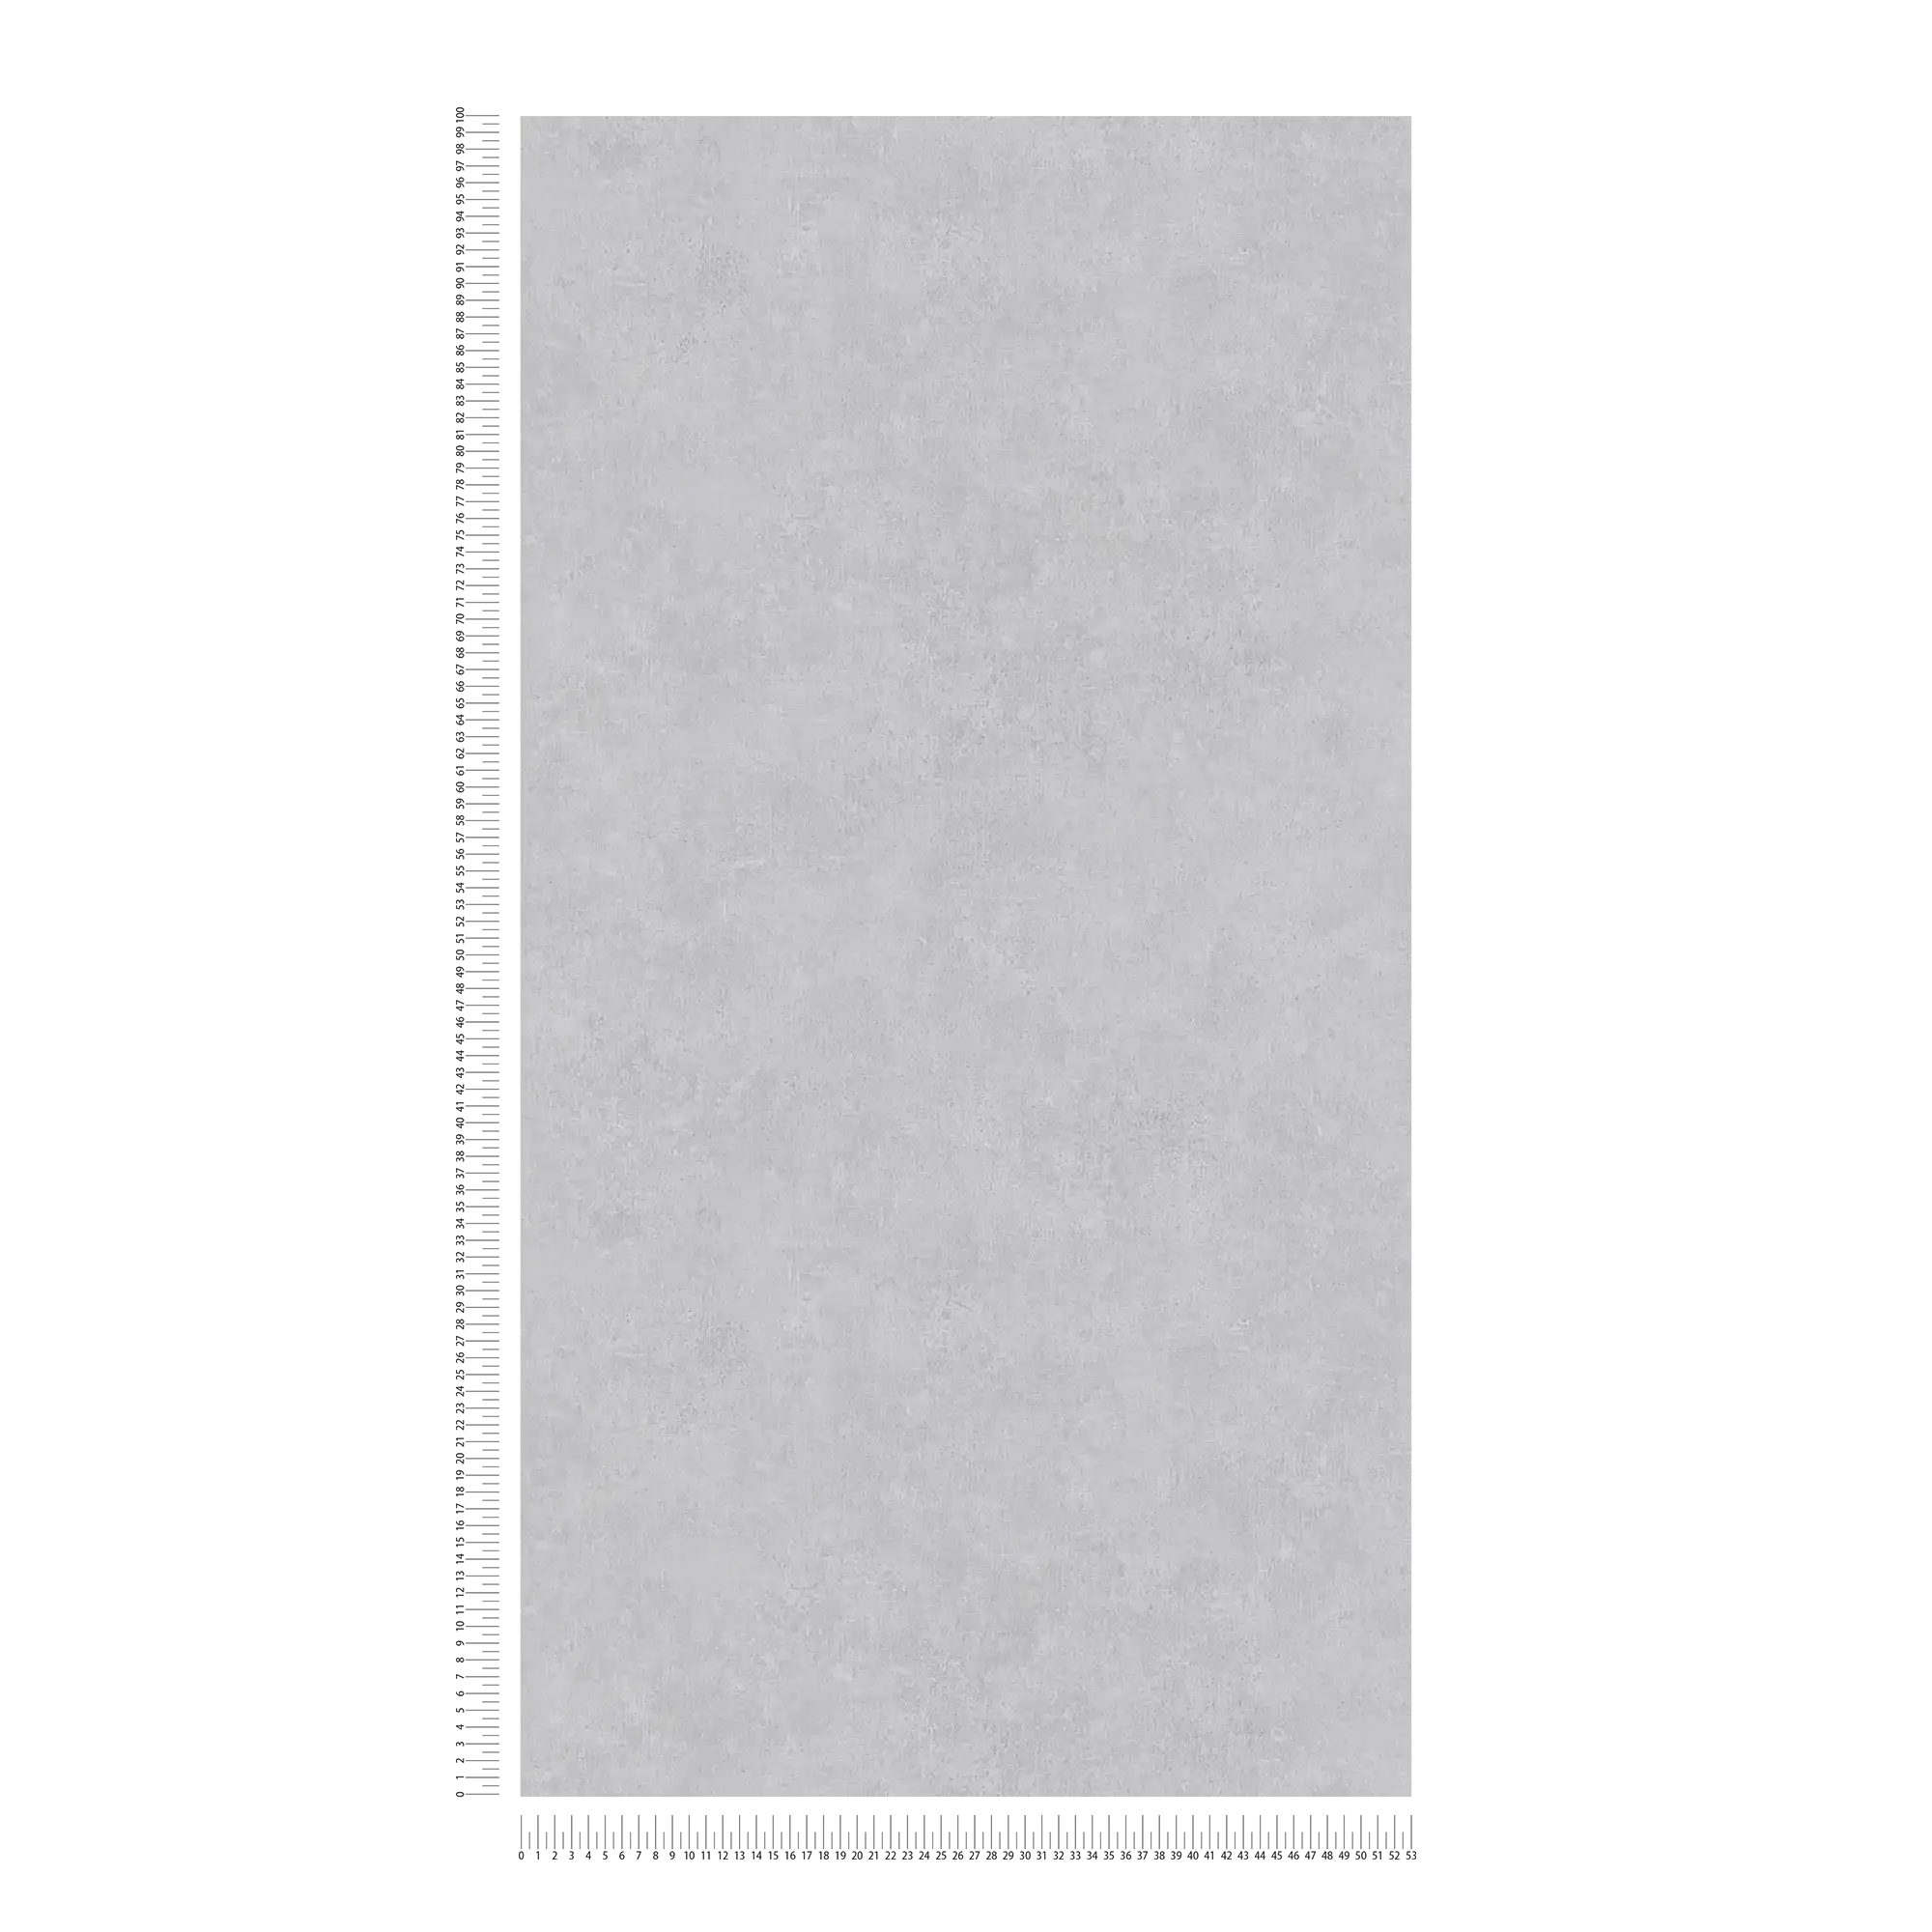             Carta da parati unitaria con motivo tono su tono in look usato - grigio
        